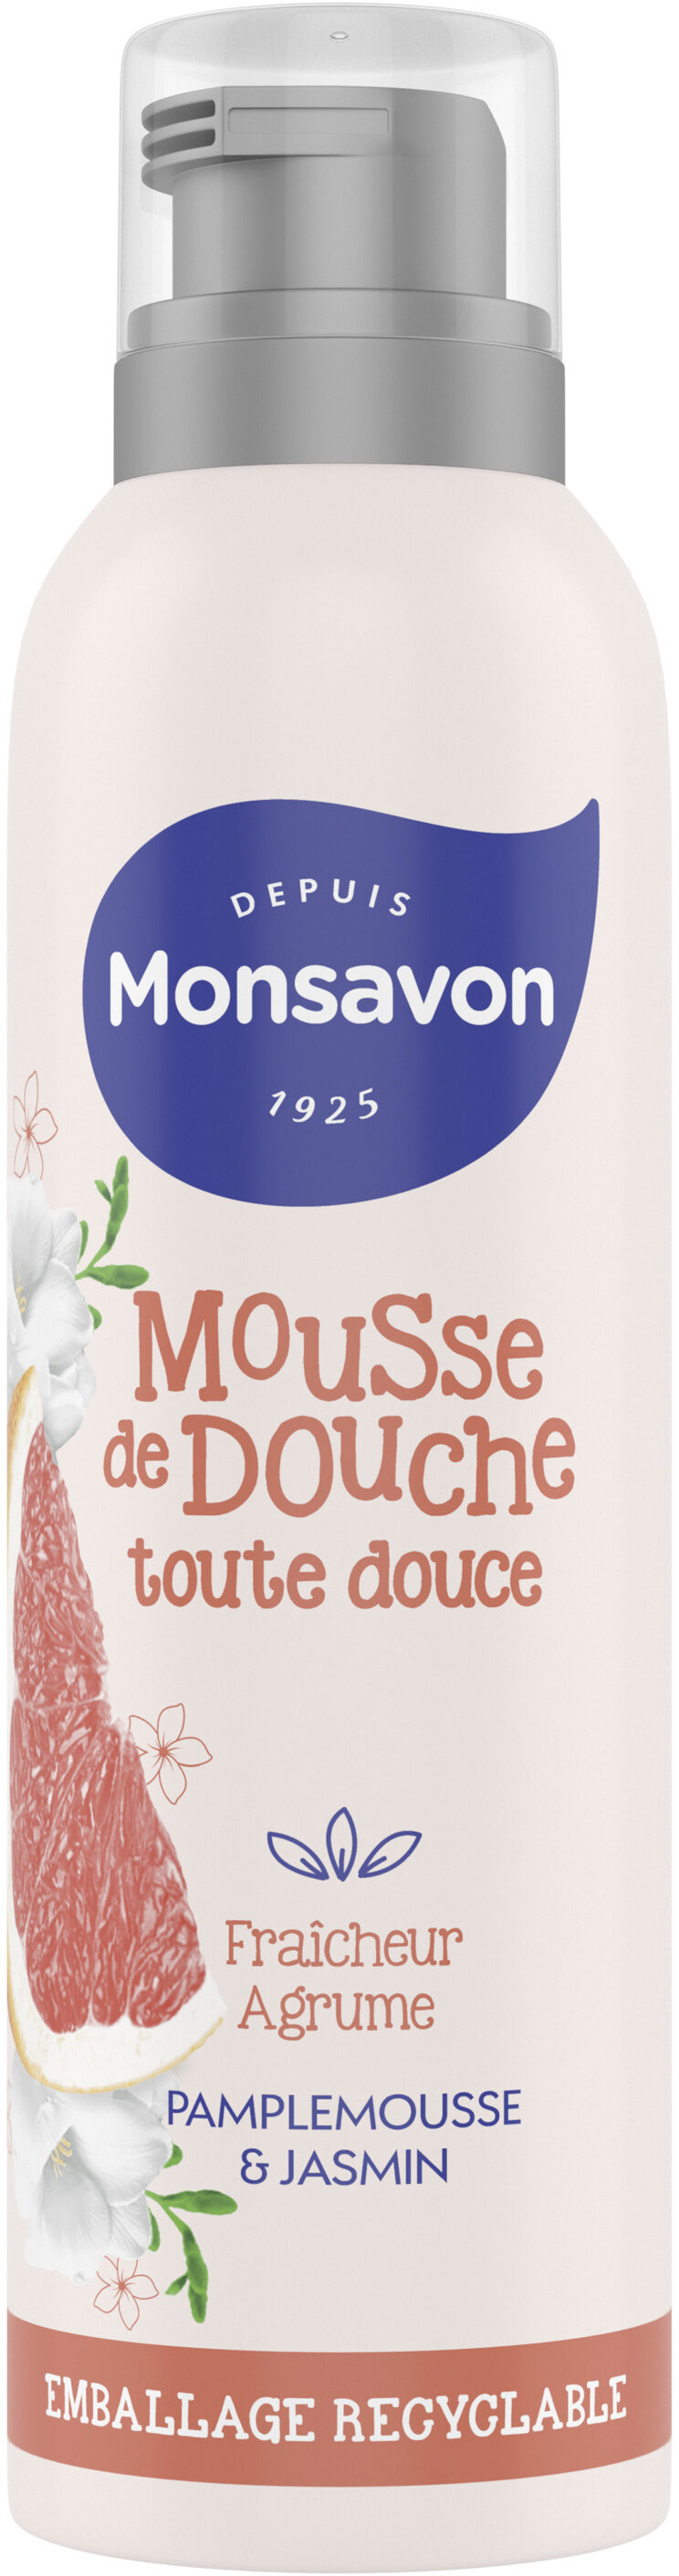 Monsavon Gel Douche Mousse Fraîcheur Agrume Pamplemousse & Jasmin 200ml - Product - fr